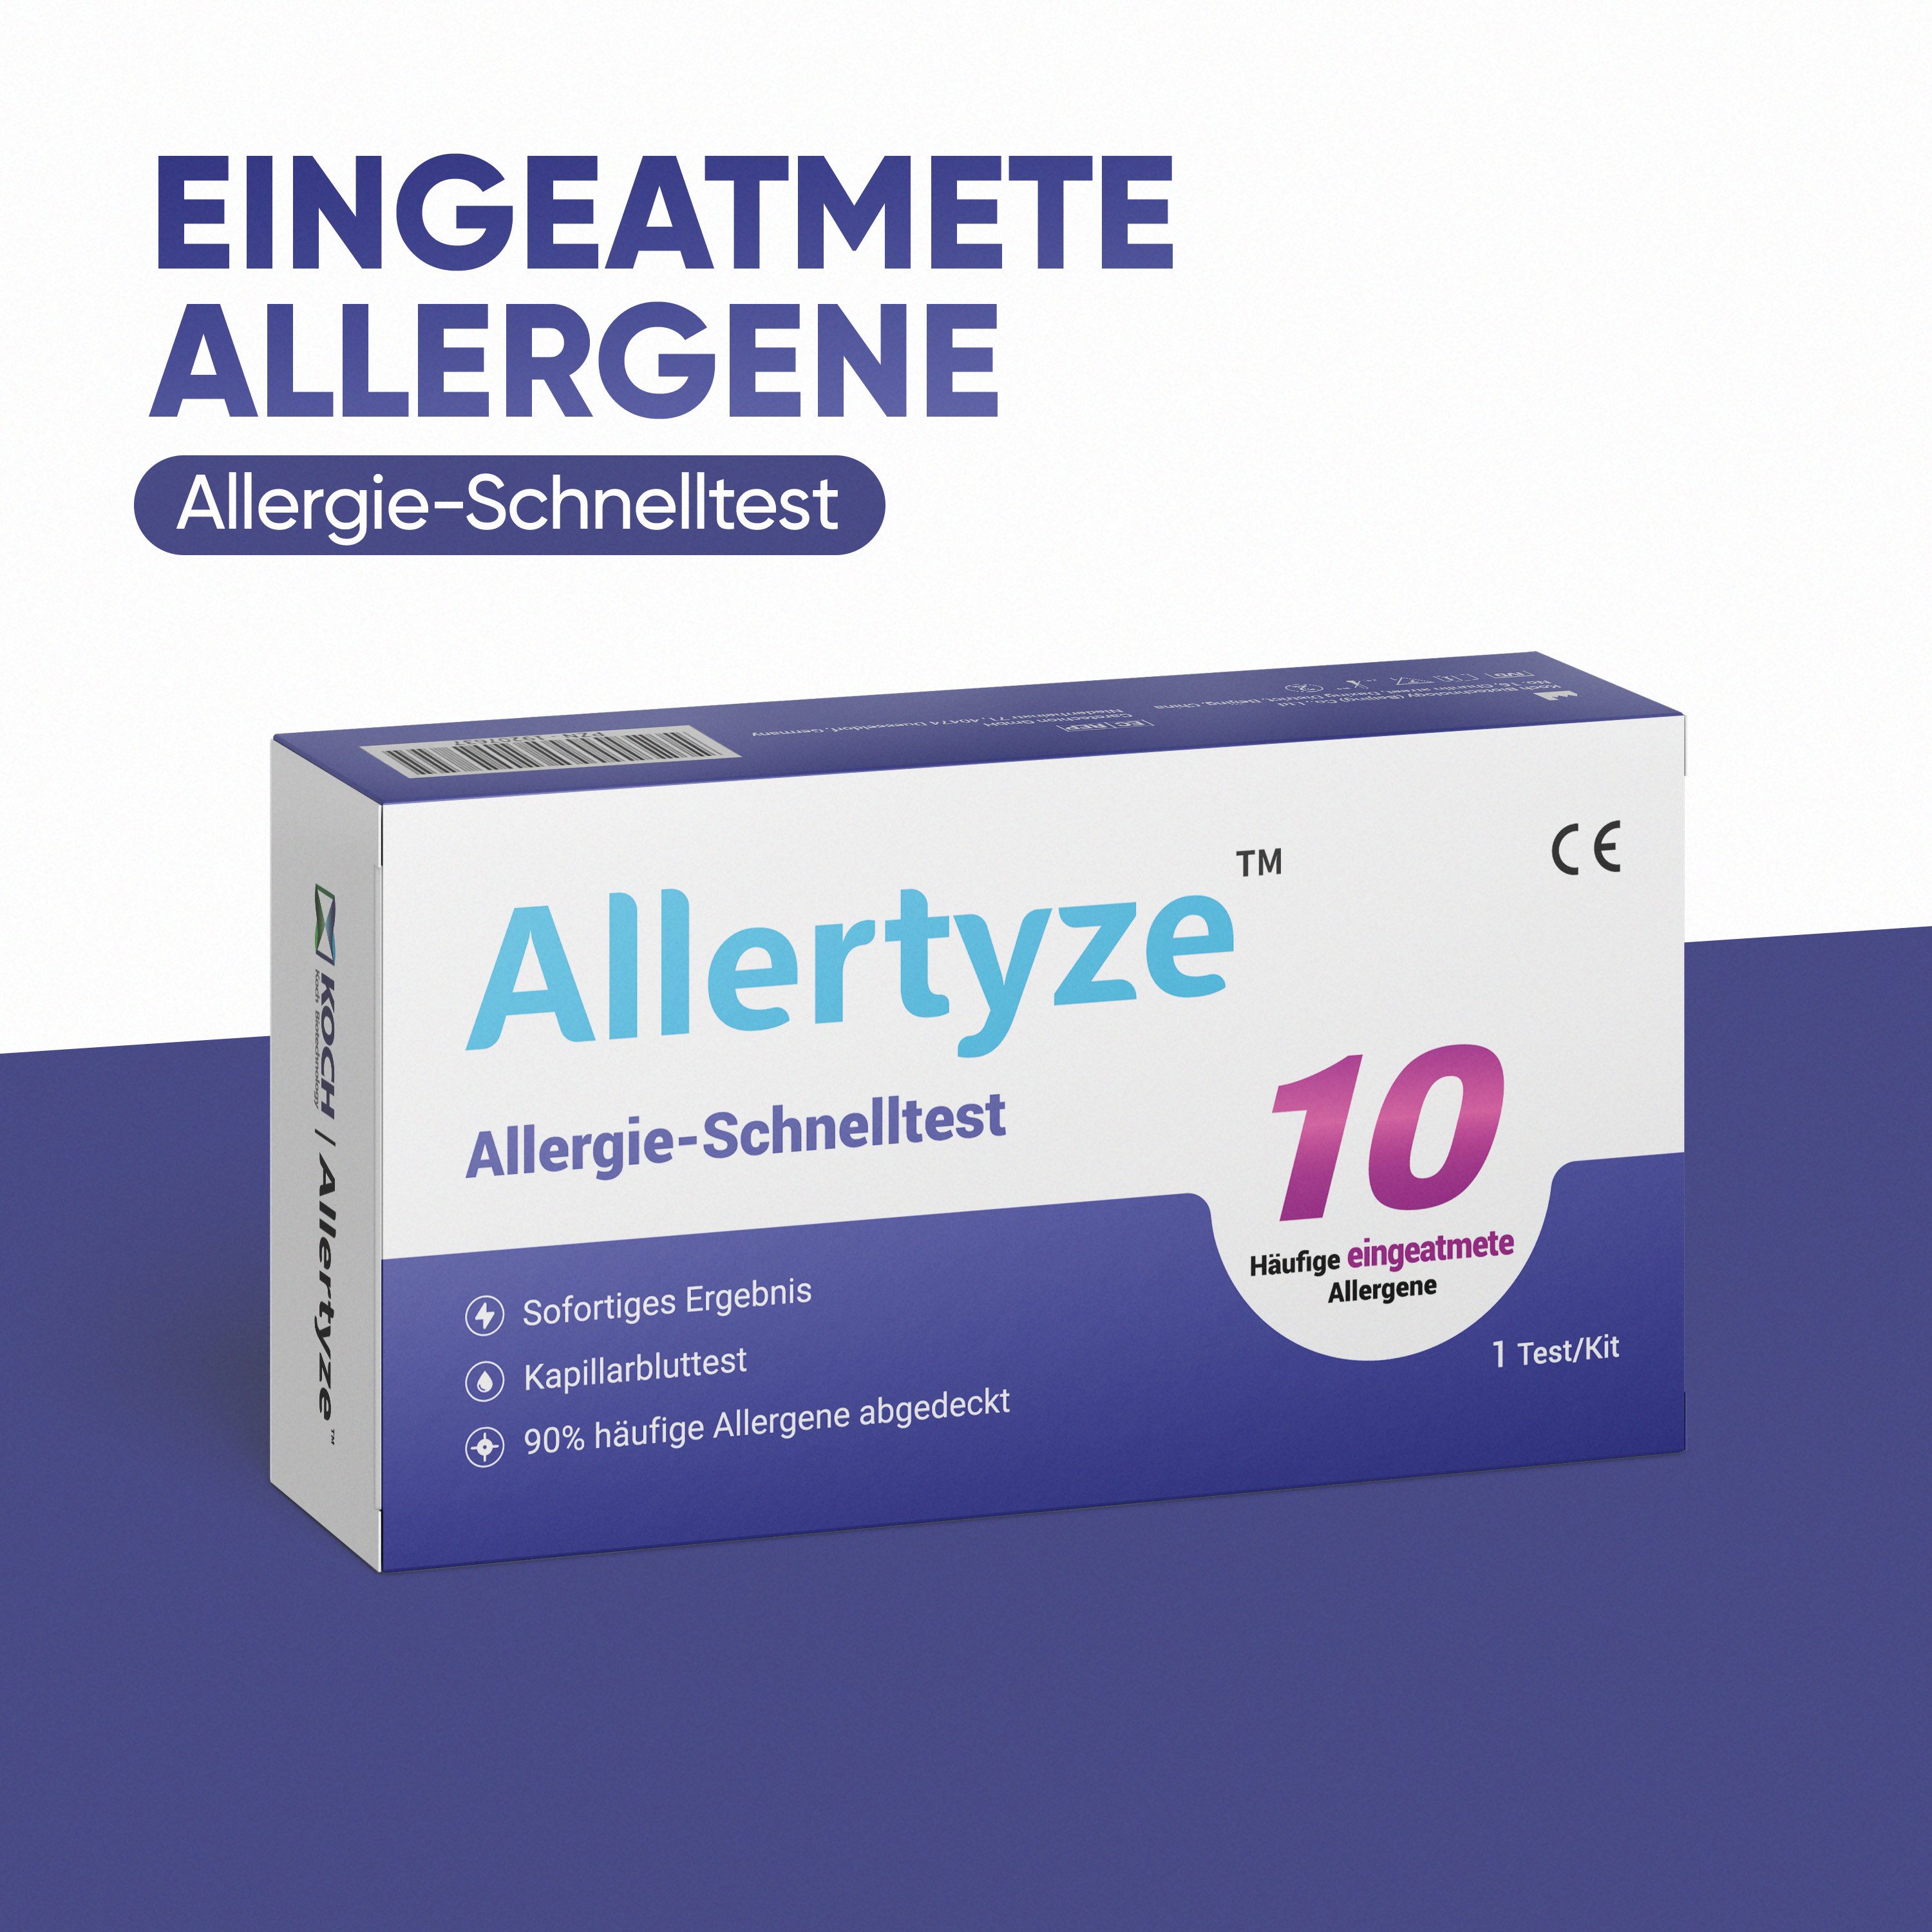 Björn&Schiller Bodentest Allertyze Allergie-Schnelltest 10 Häufige eingeatmete Allergene